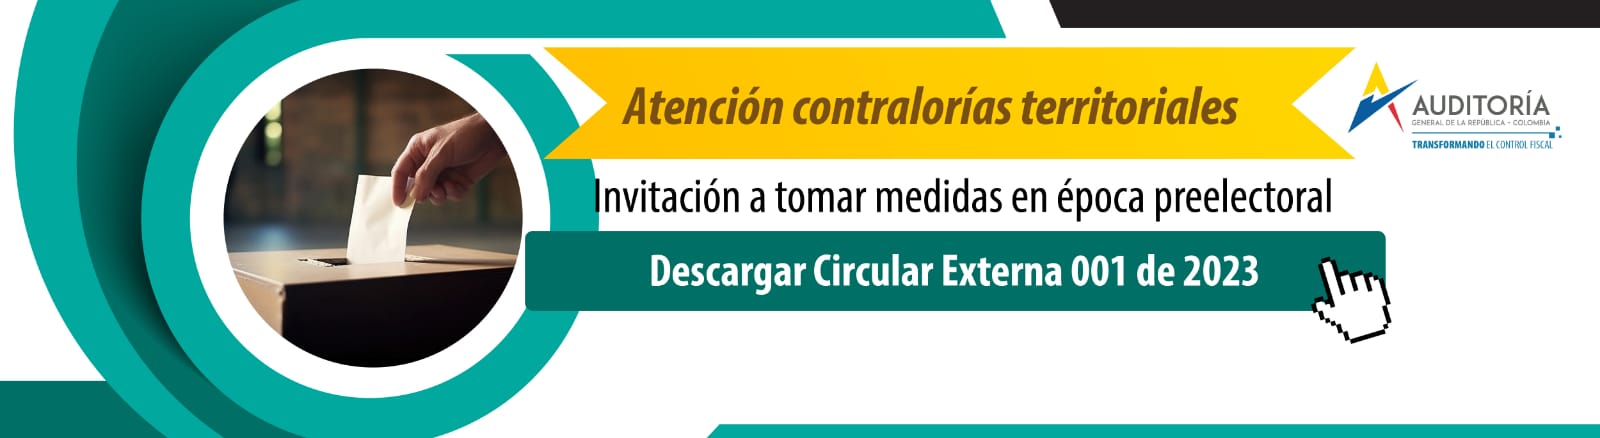 Circular externa - Invitación a tomar medidas preelectorales - Omagen general colores verde y amarillo